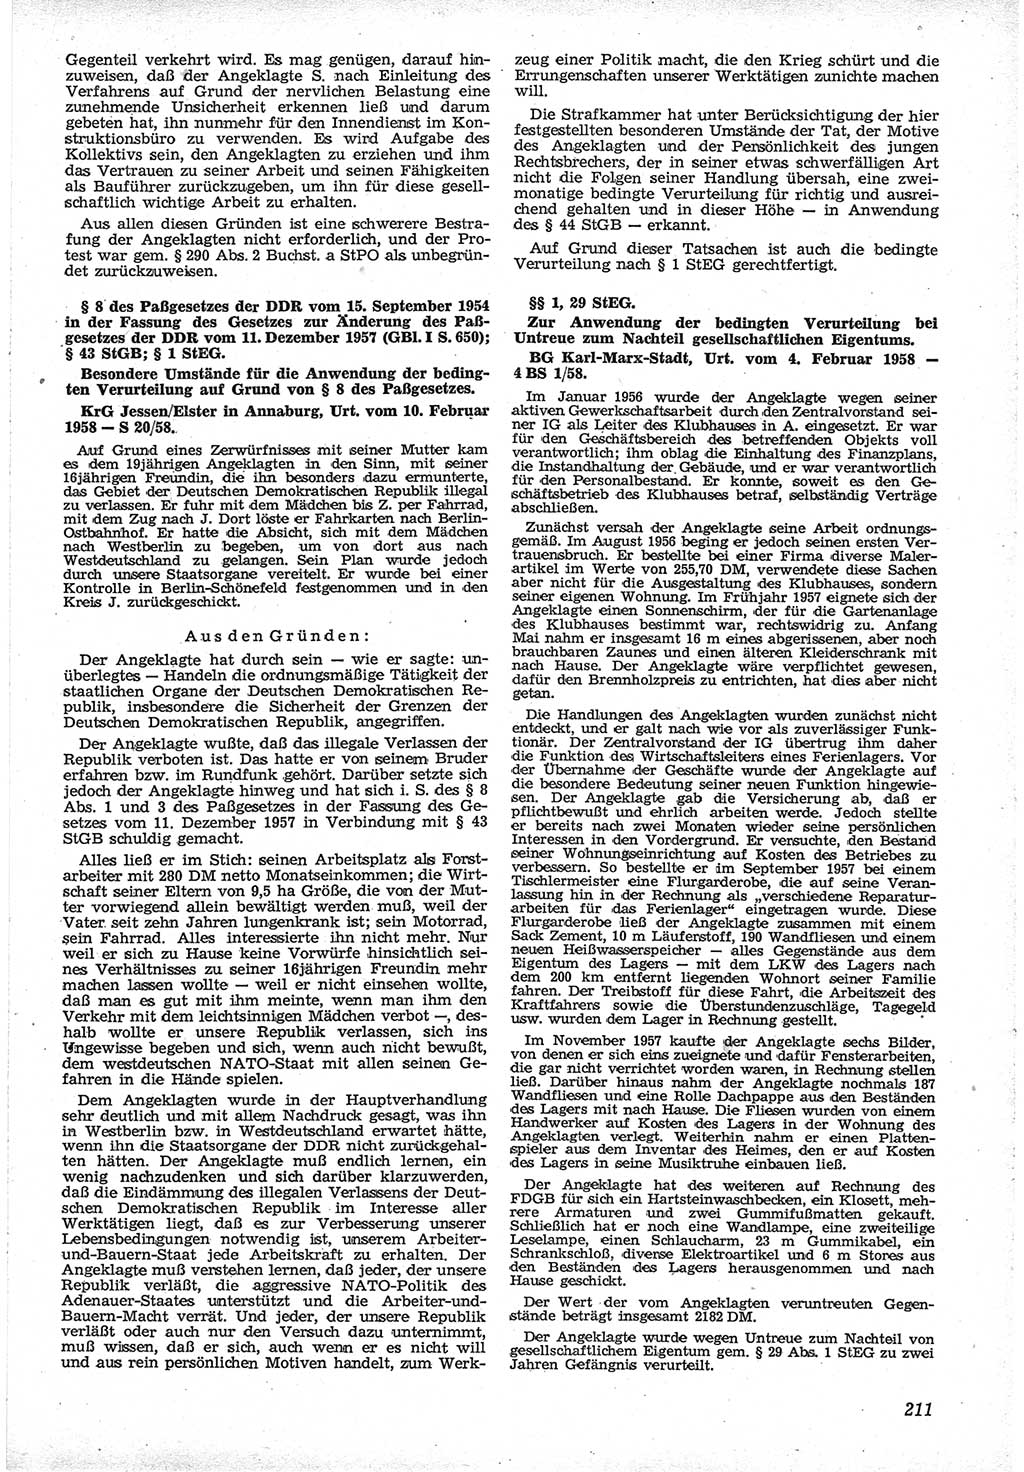 Neue Justiz (NJ), Zeitschrift für Recht und Rechtswissenschaft [Deutsche Demokratische Republik (DDR)], 12. Jahrgang 1958, Seite 211 (NJ DDR 1958, S. 211)